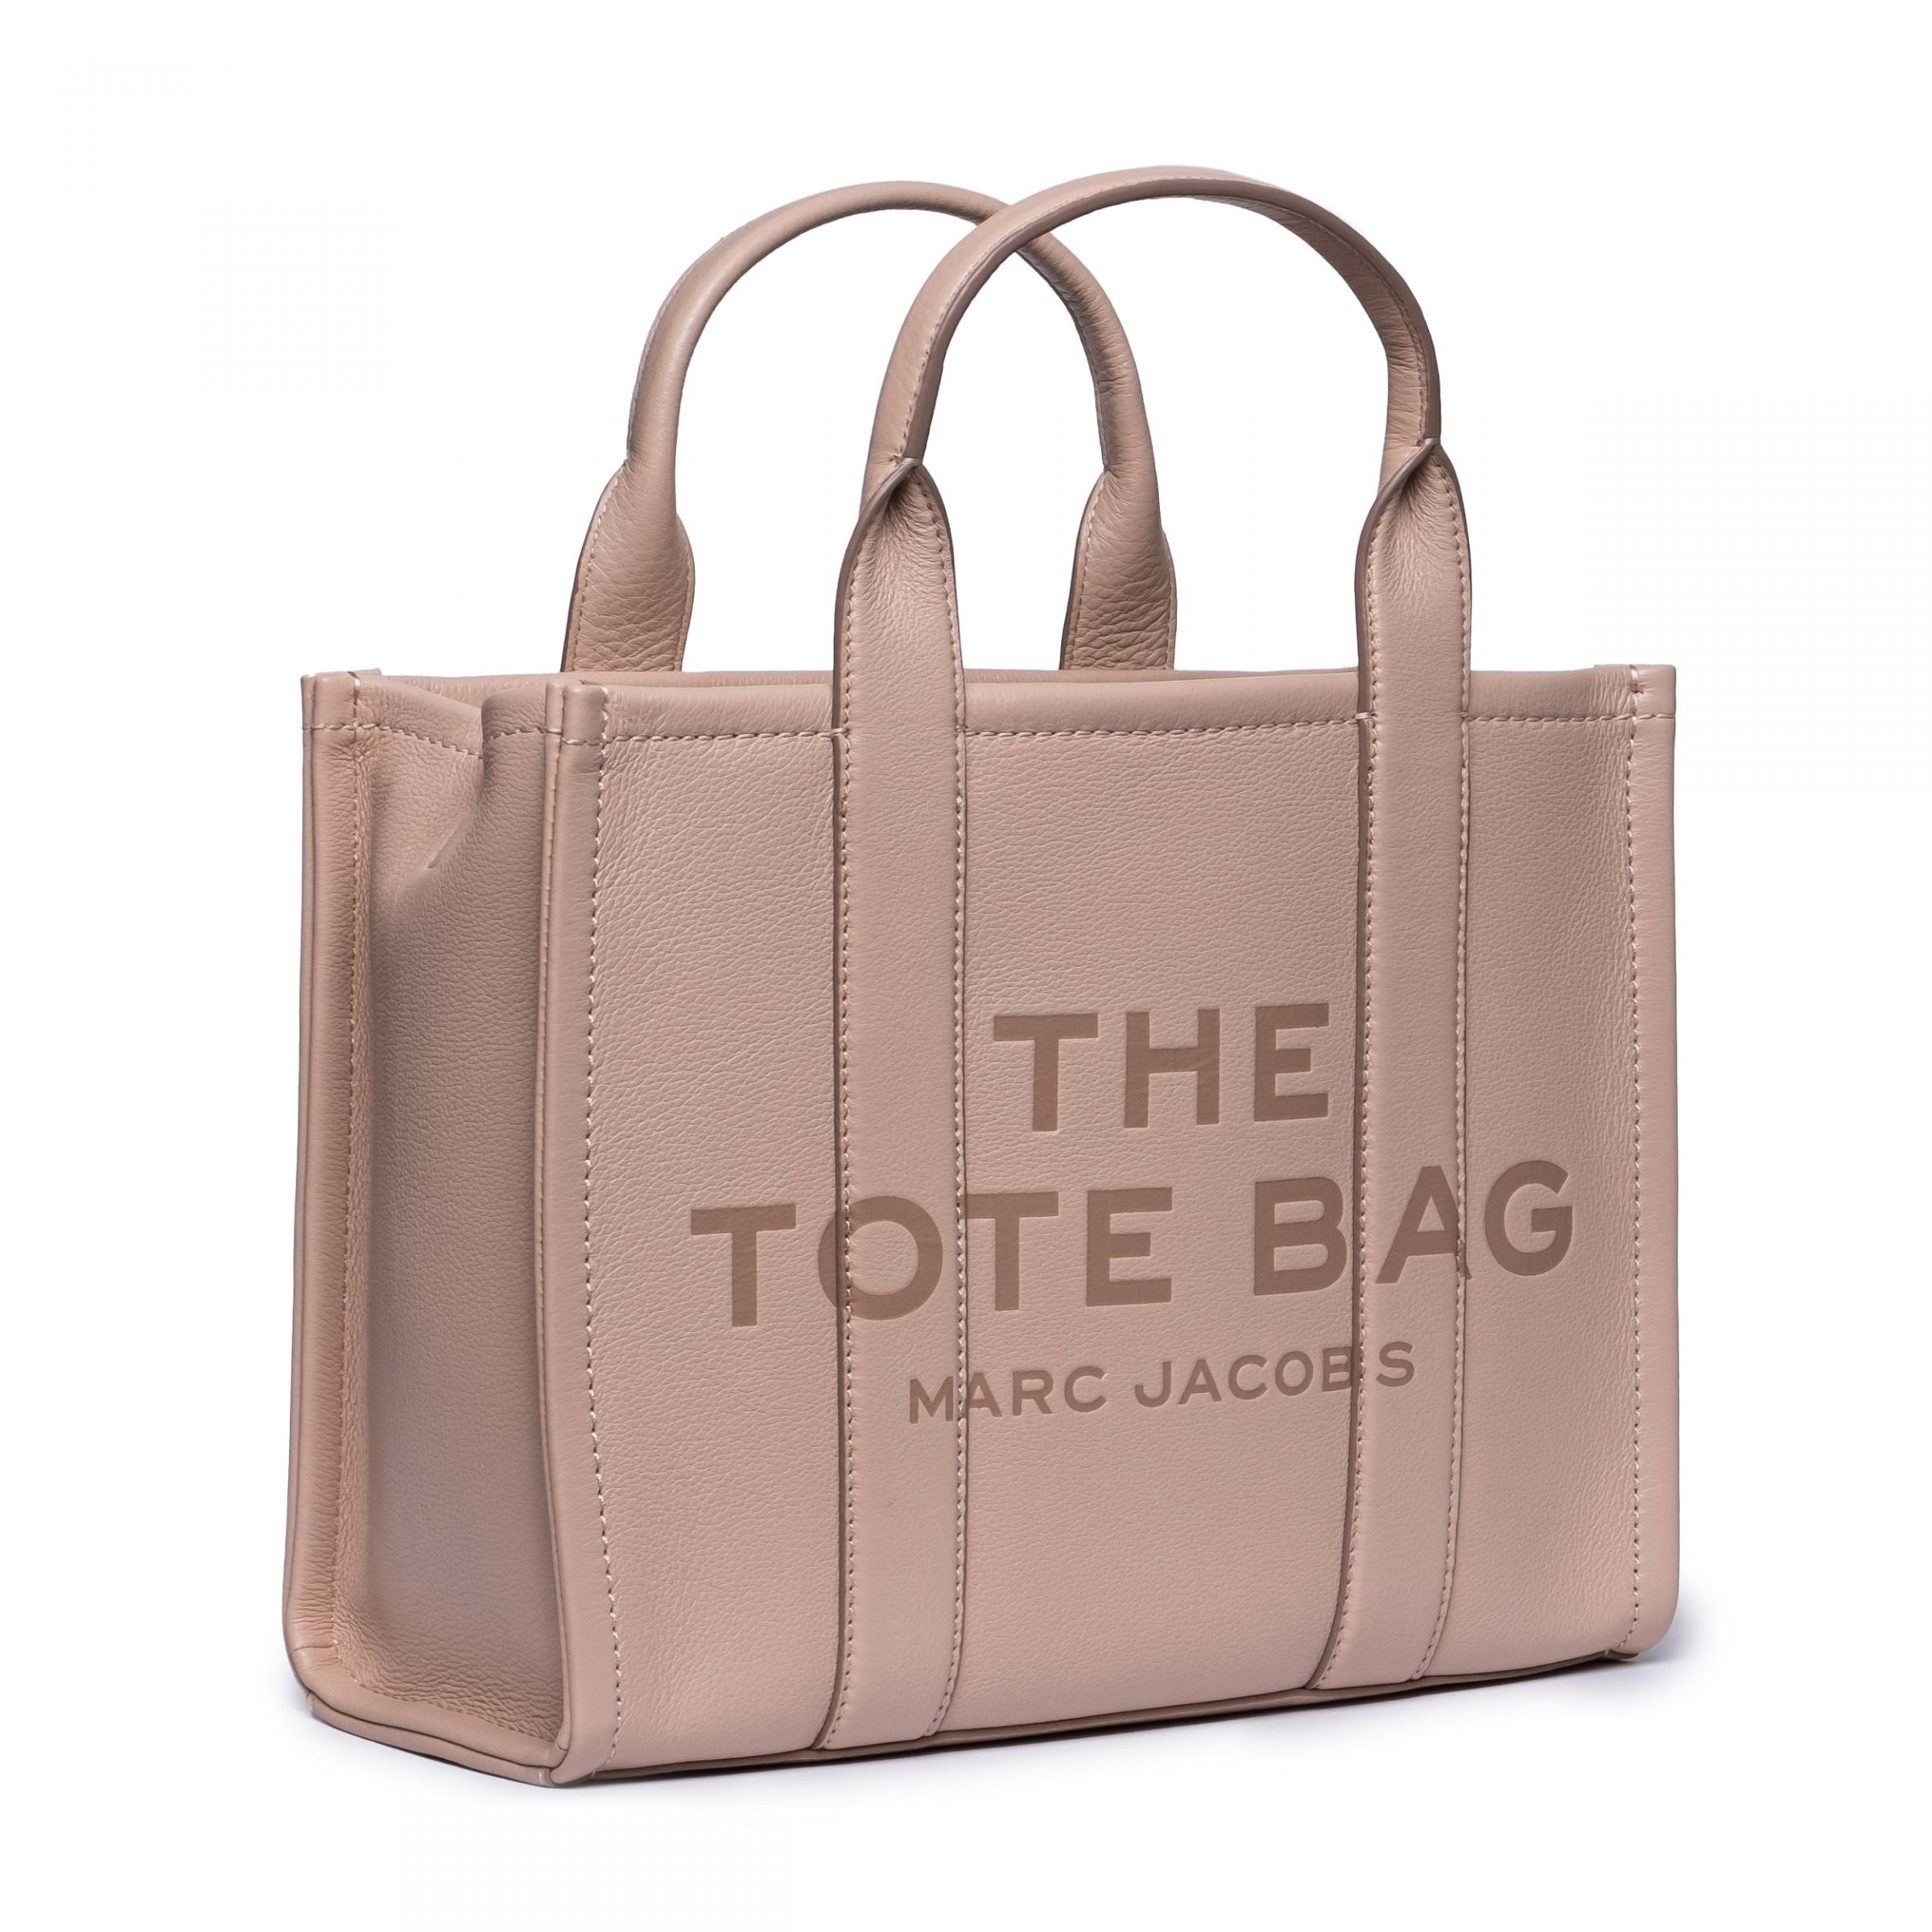 Сумка Marc Jacobs The Tote Bag пудровая